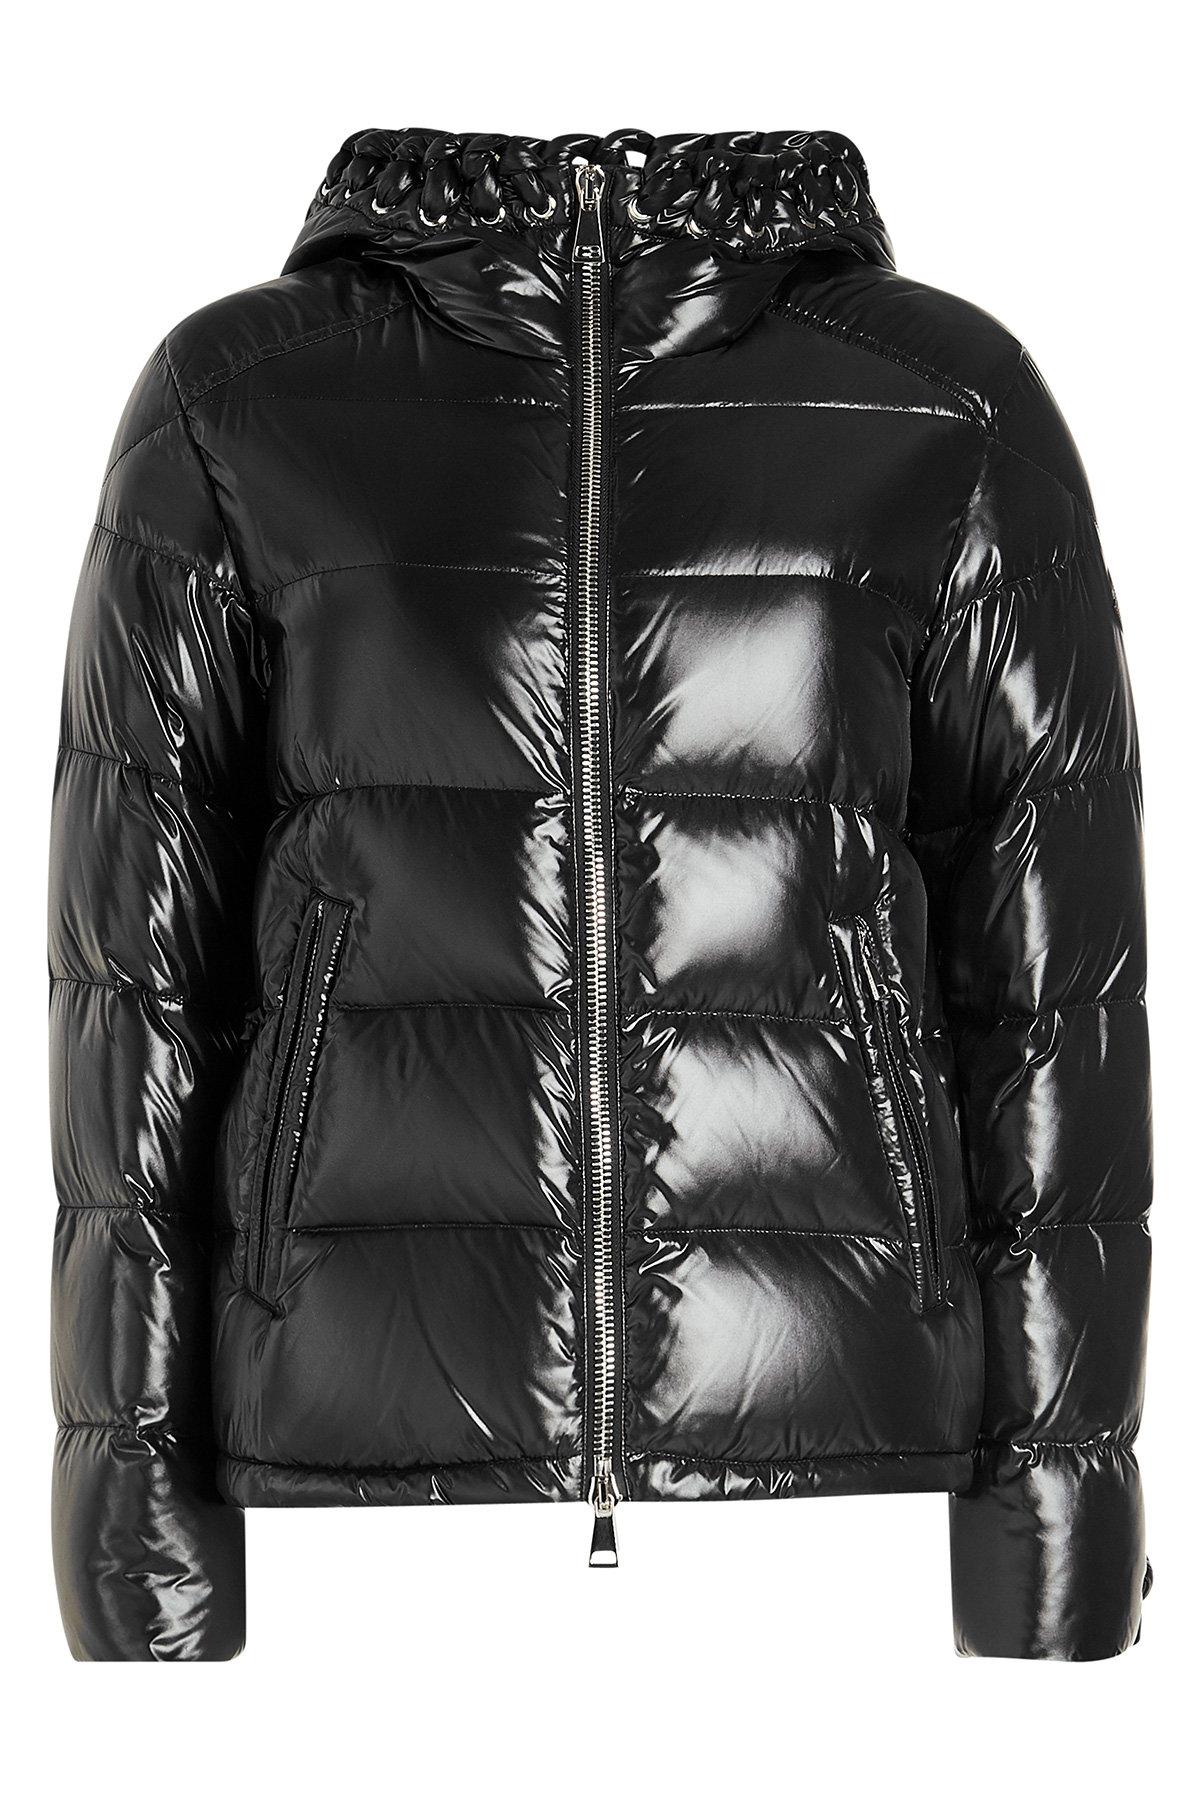 Moncler Genius 6 Moncler Noir Kei Ninomiya Quilten Down Jacket With Leather  In Black | ModeSens